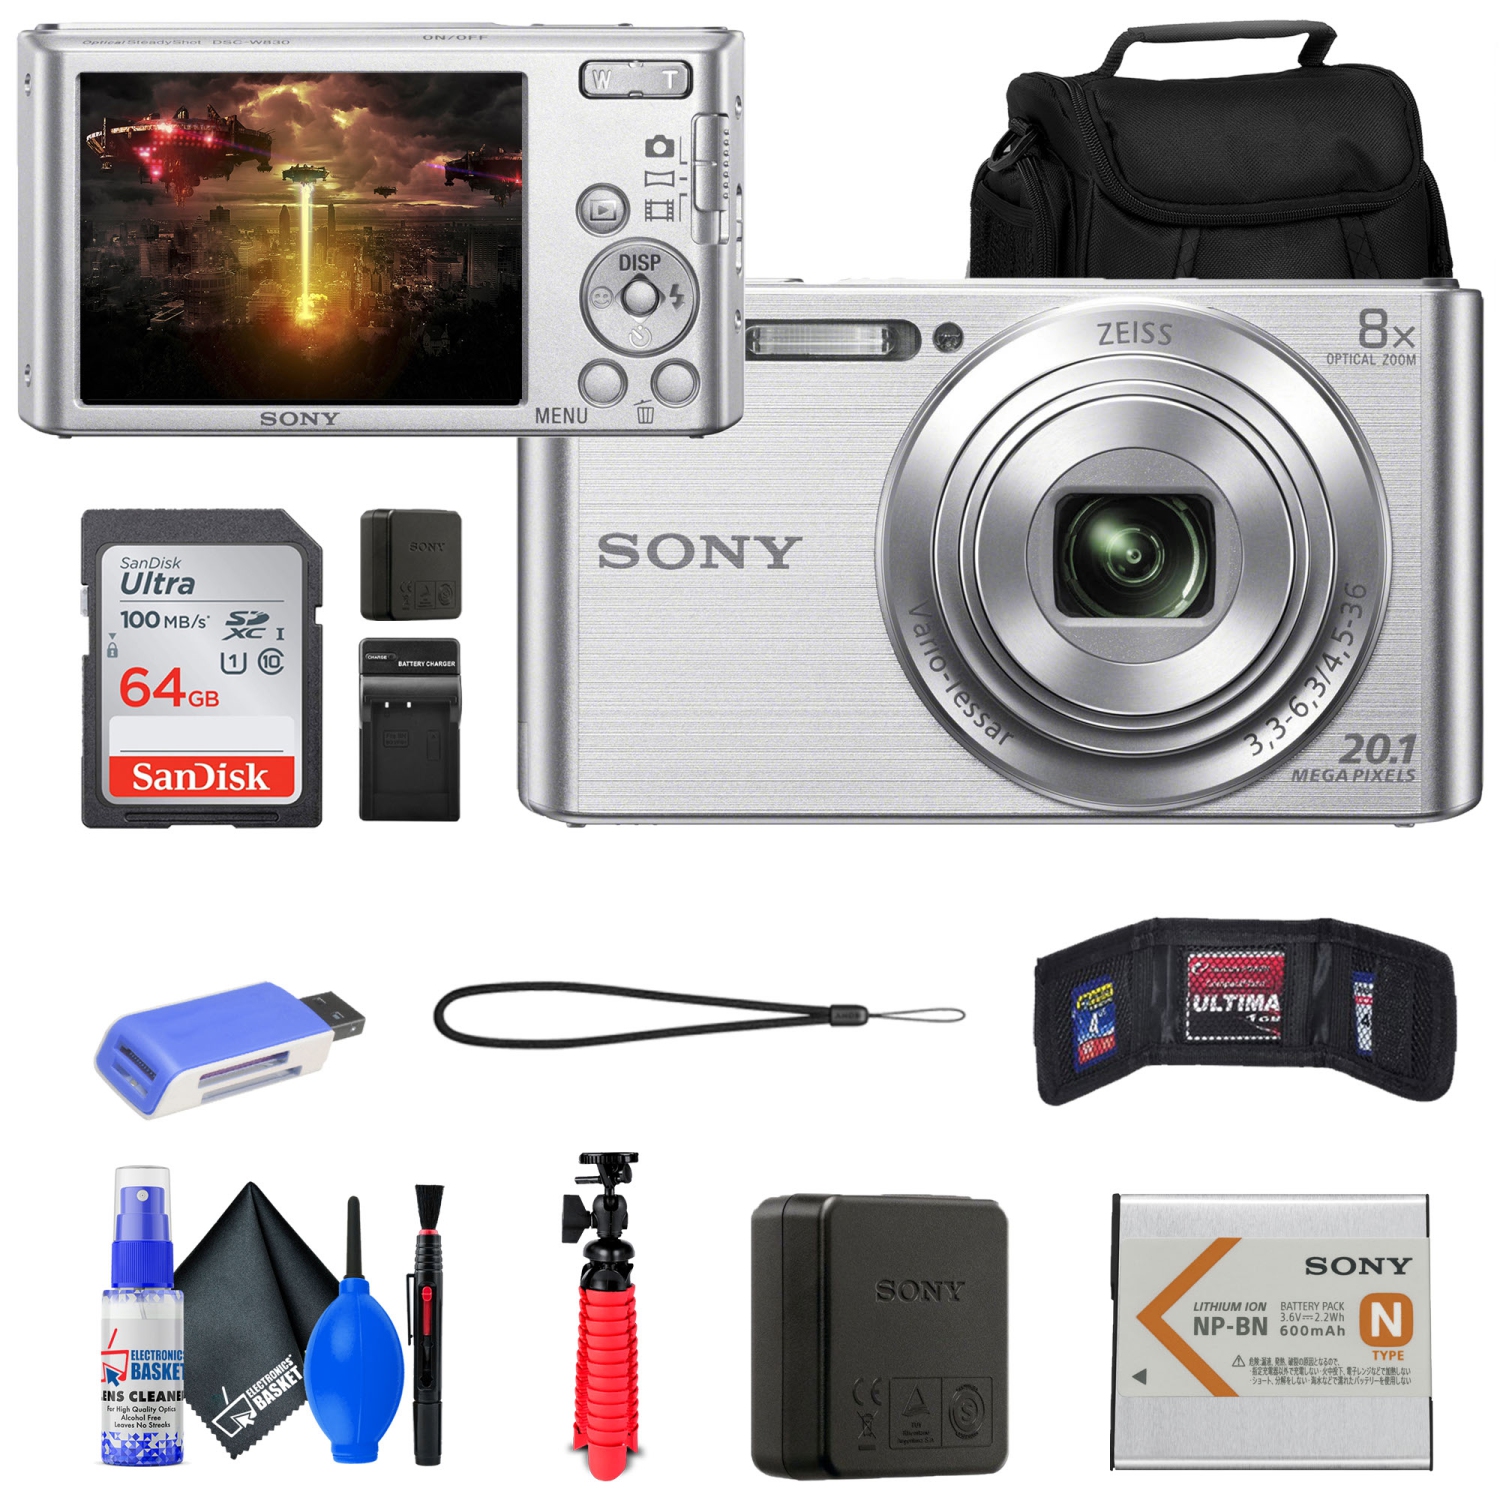 Sony DSC-W830 Digital Camera + Case + 64GB Card + Card Reader + Tripod + More